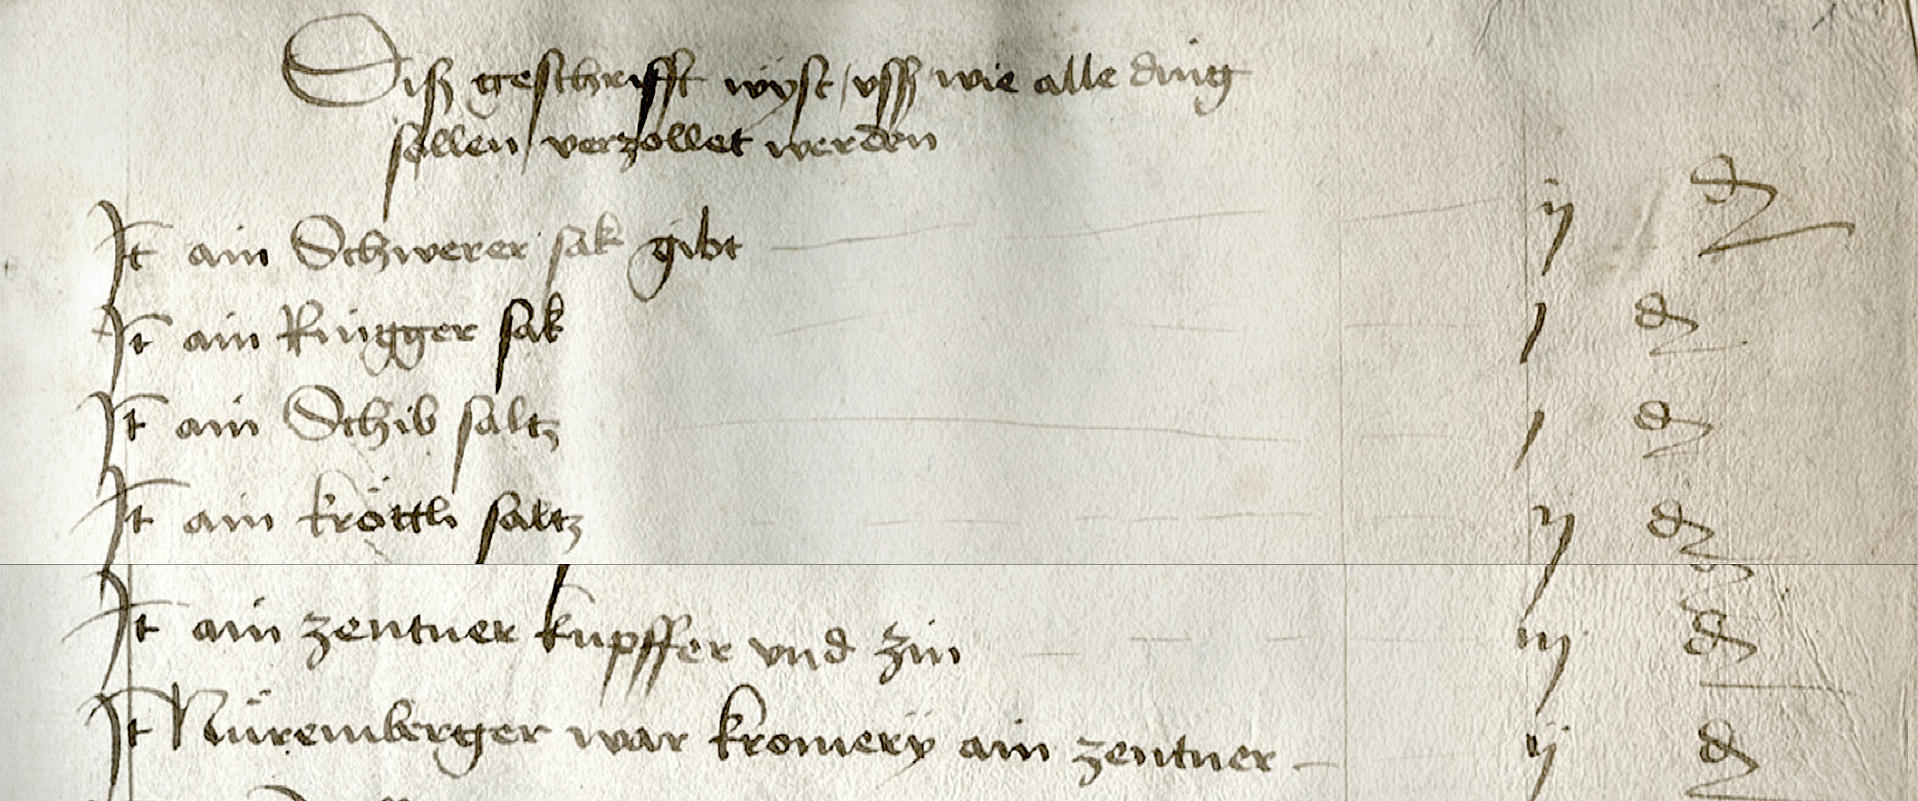 Gredbuch von Steinach: Wirtschaftliche Ausrichtung des Appenzellerlands auf den Bodensee (1477/78)